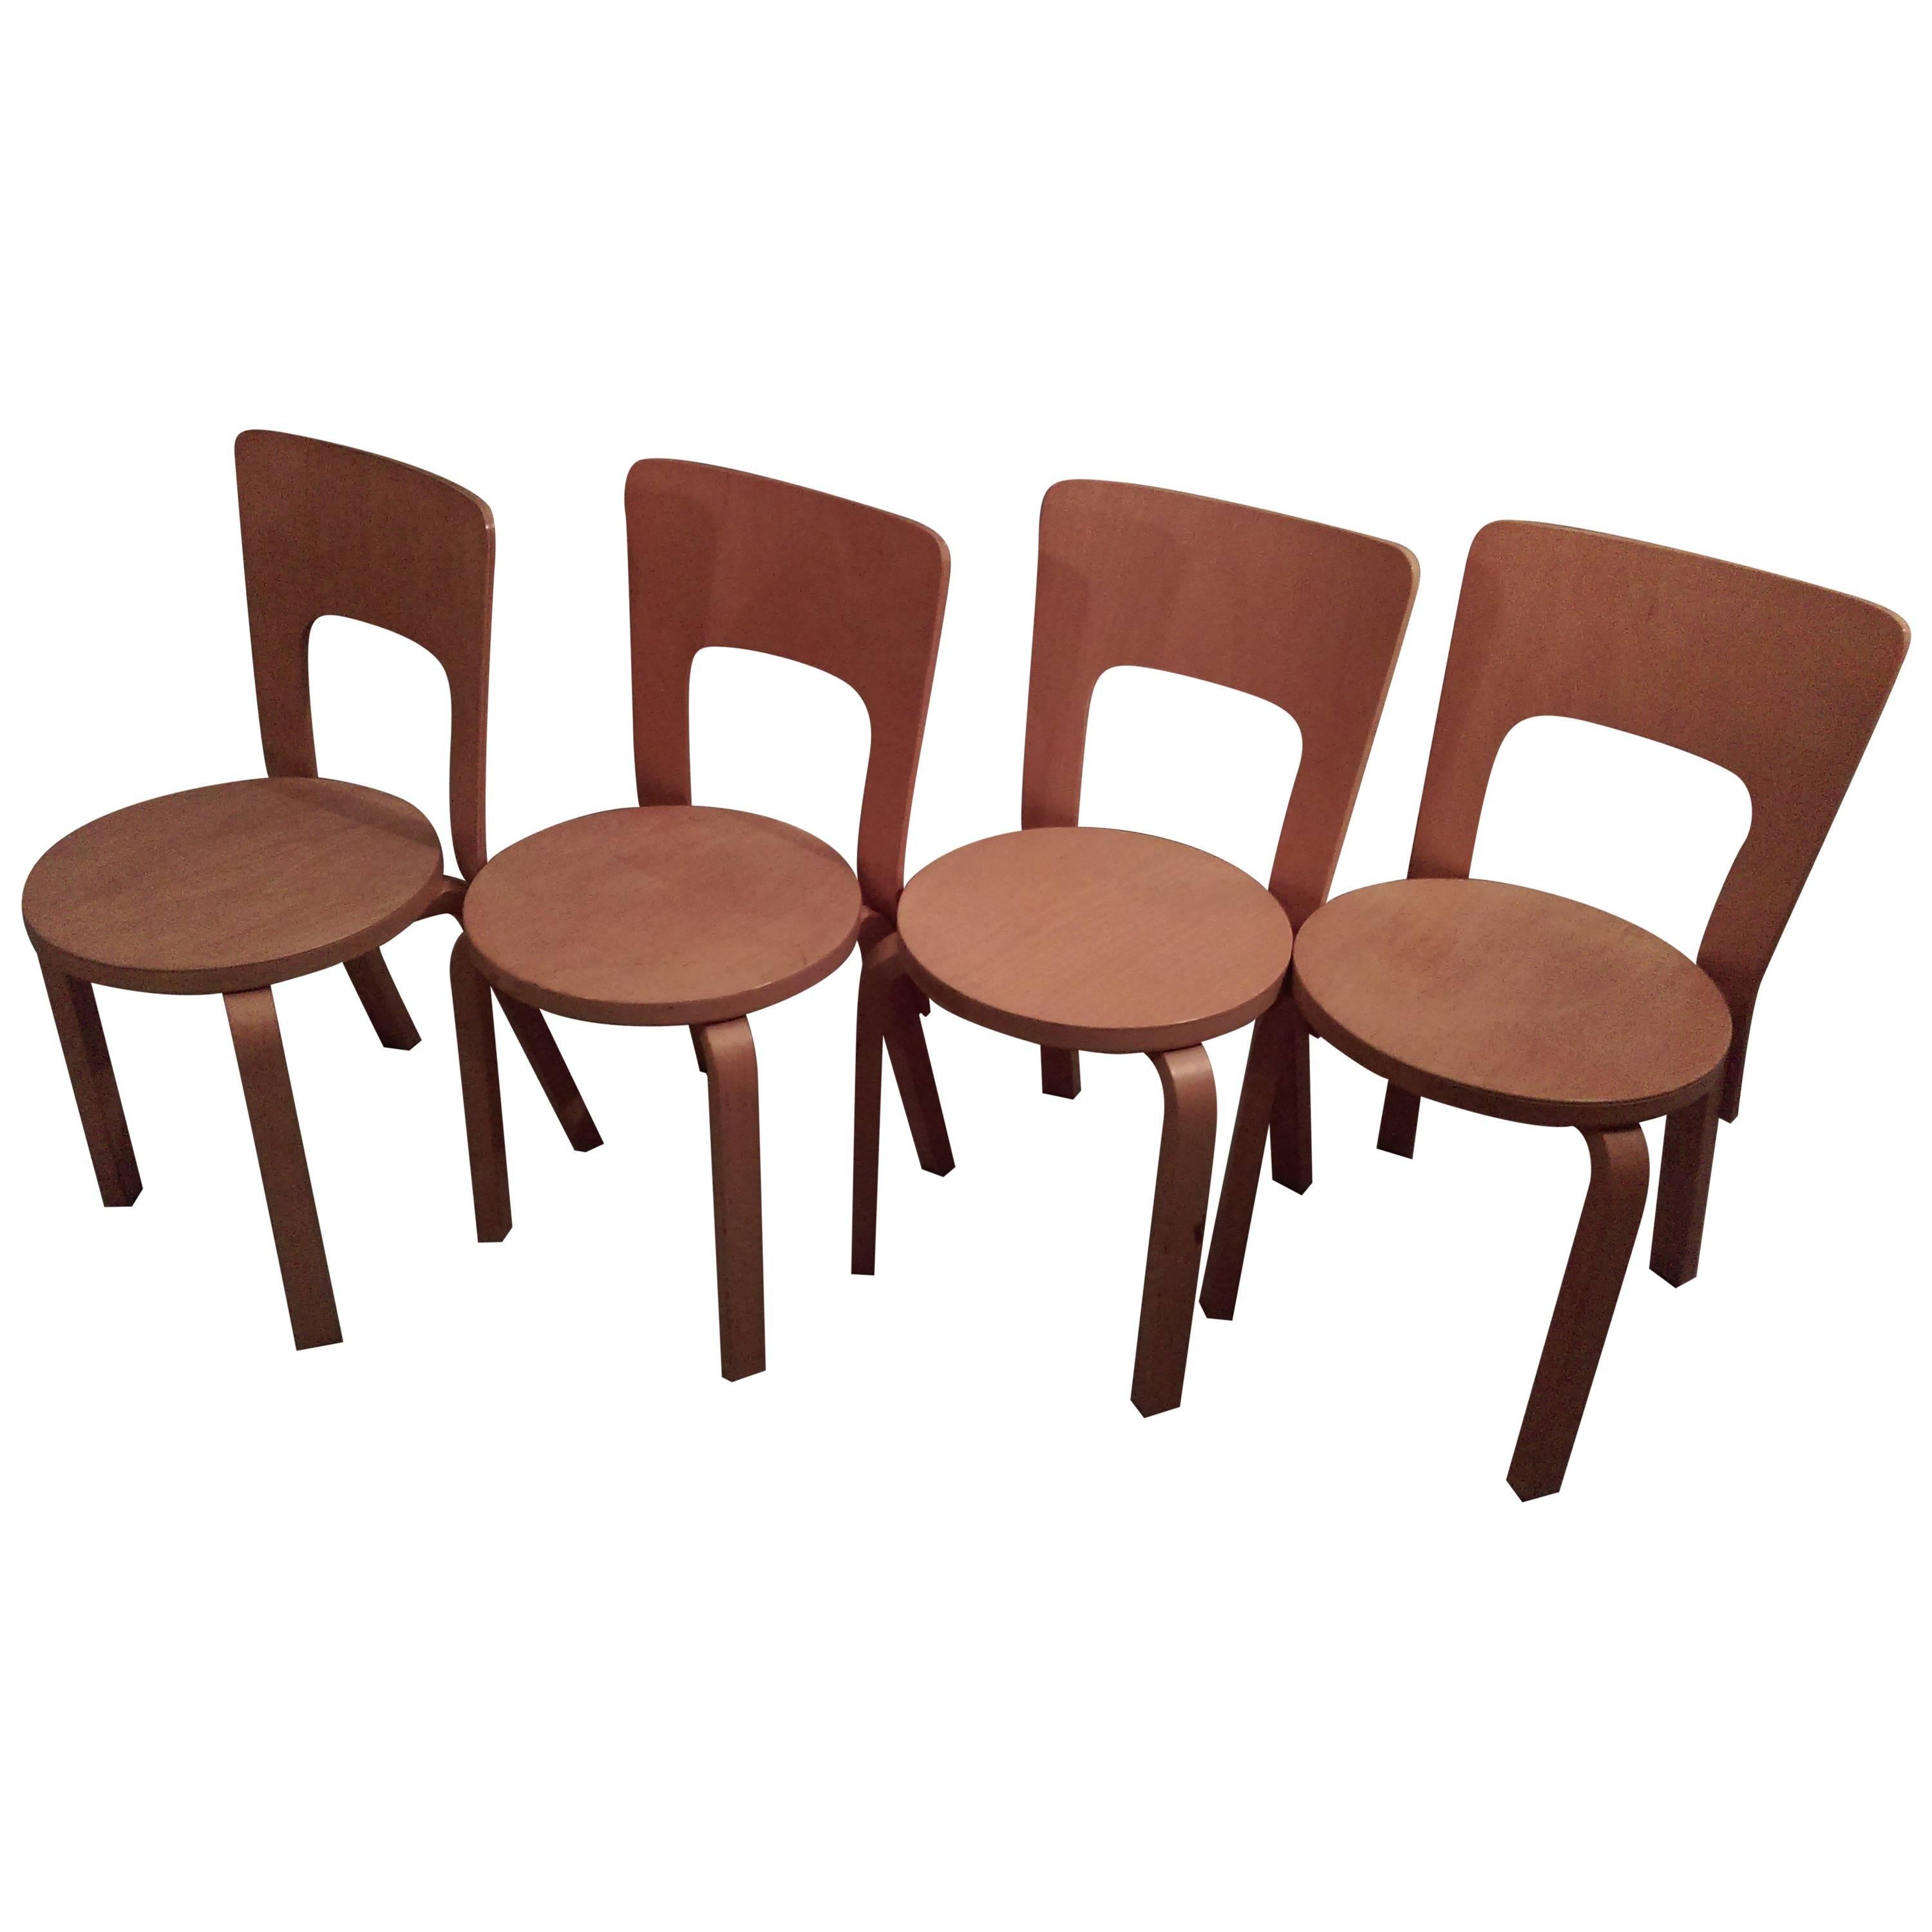 1960s-1970s Set of Four Alvar Aalto Model 66 Dinner Chairs for Artek Finland